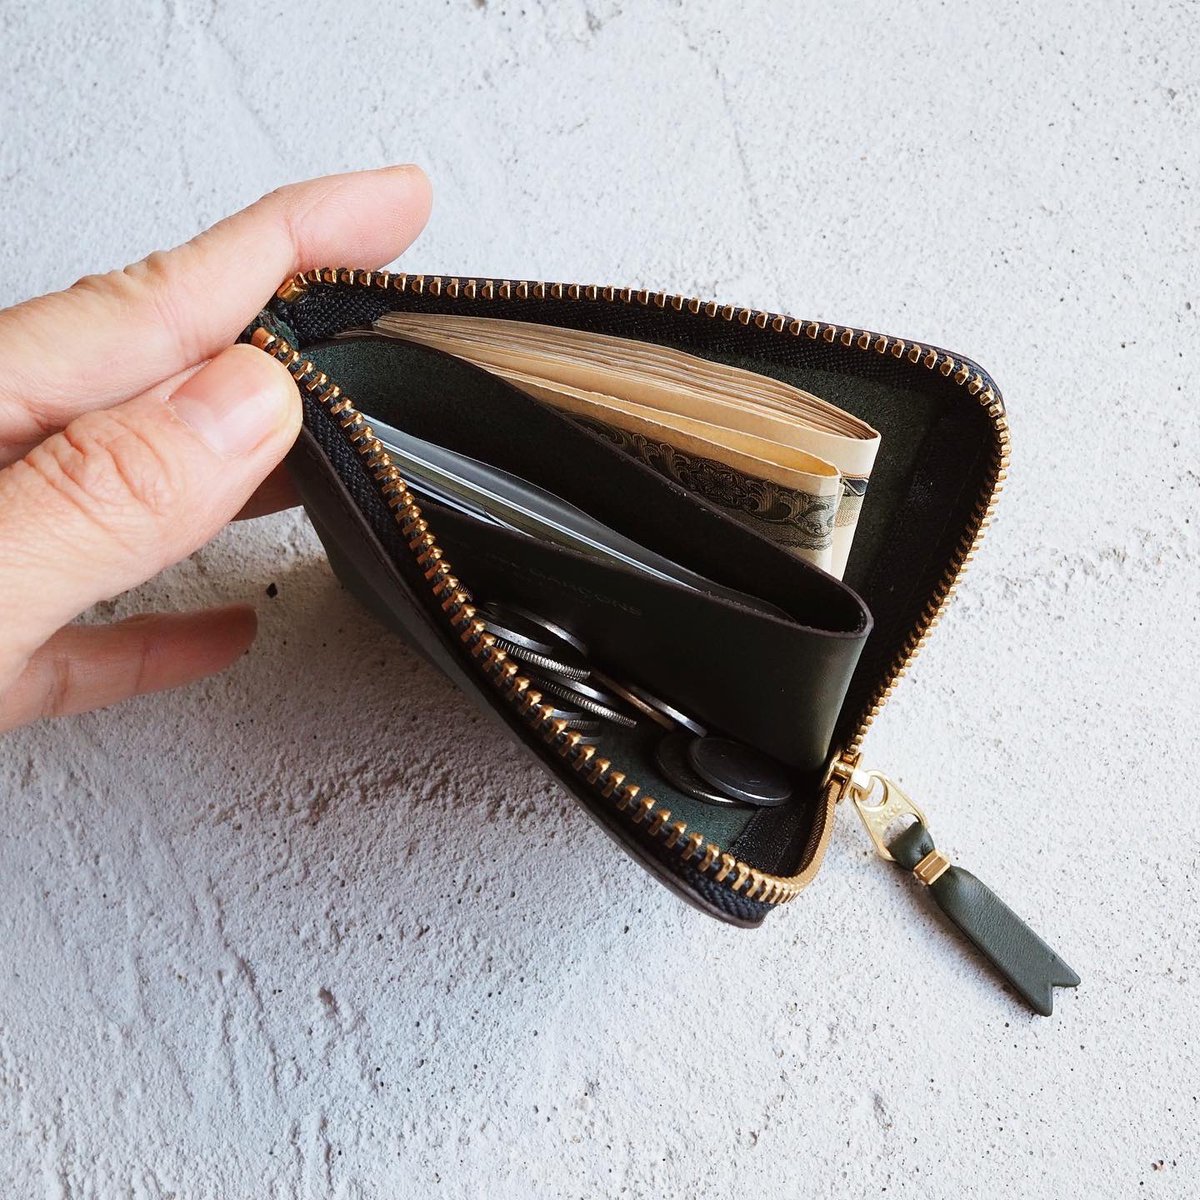 小さい財布をお探しの方はこちらをどうぞ!コムデギャルソンの財布が小さい軽い薄い! | 話題の画像プラス